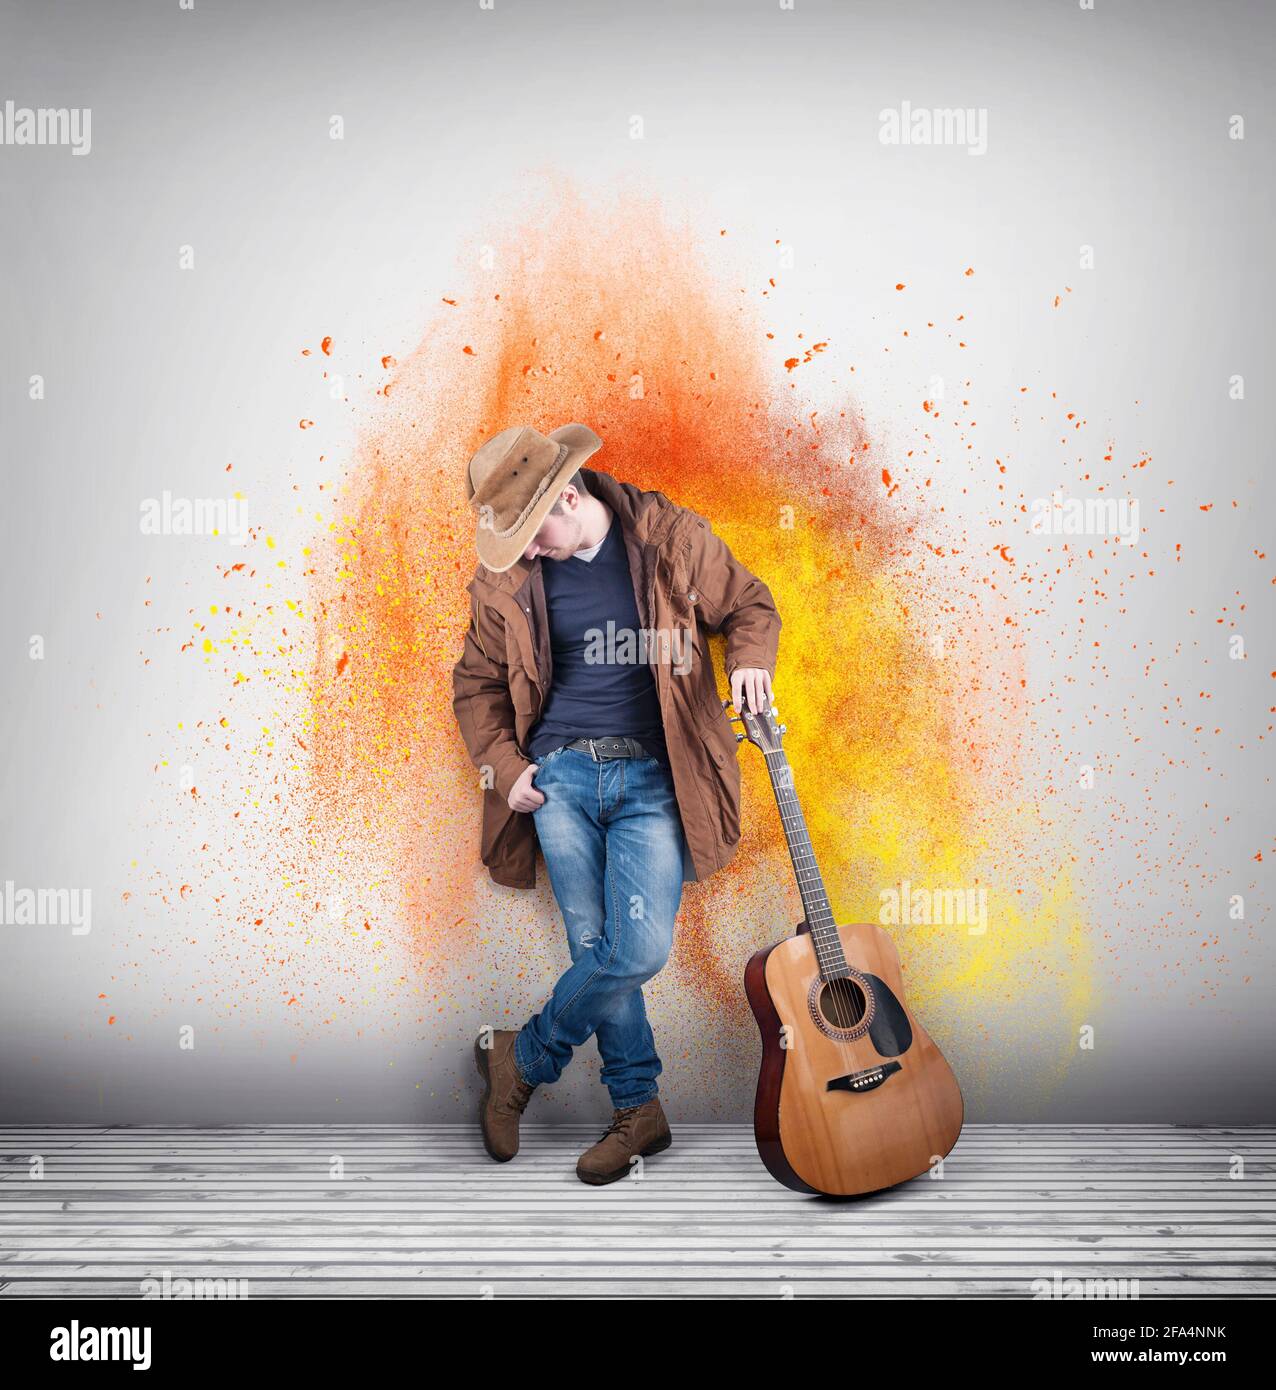 Vaquero con una guitarra acústica contra una pared pintada de colores.  Explosión de polvo Fotografía de stock - Alamy